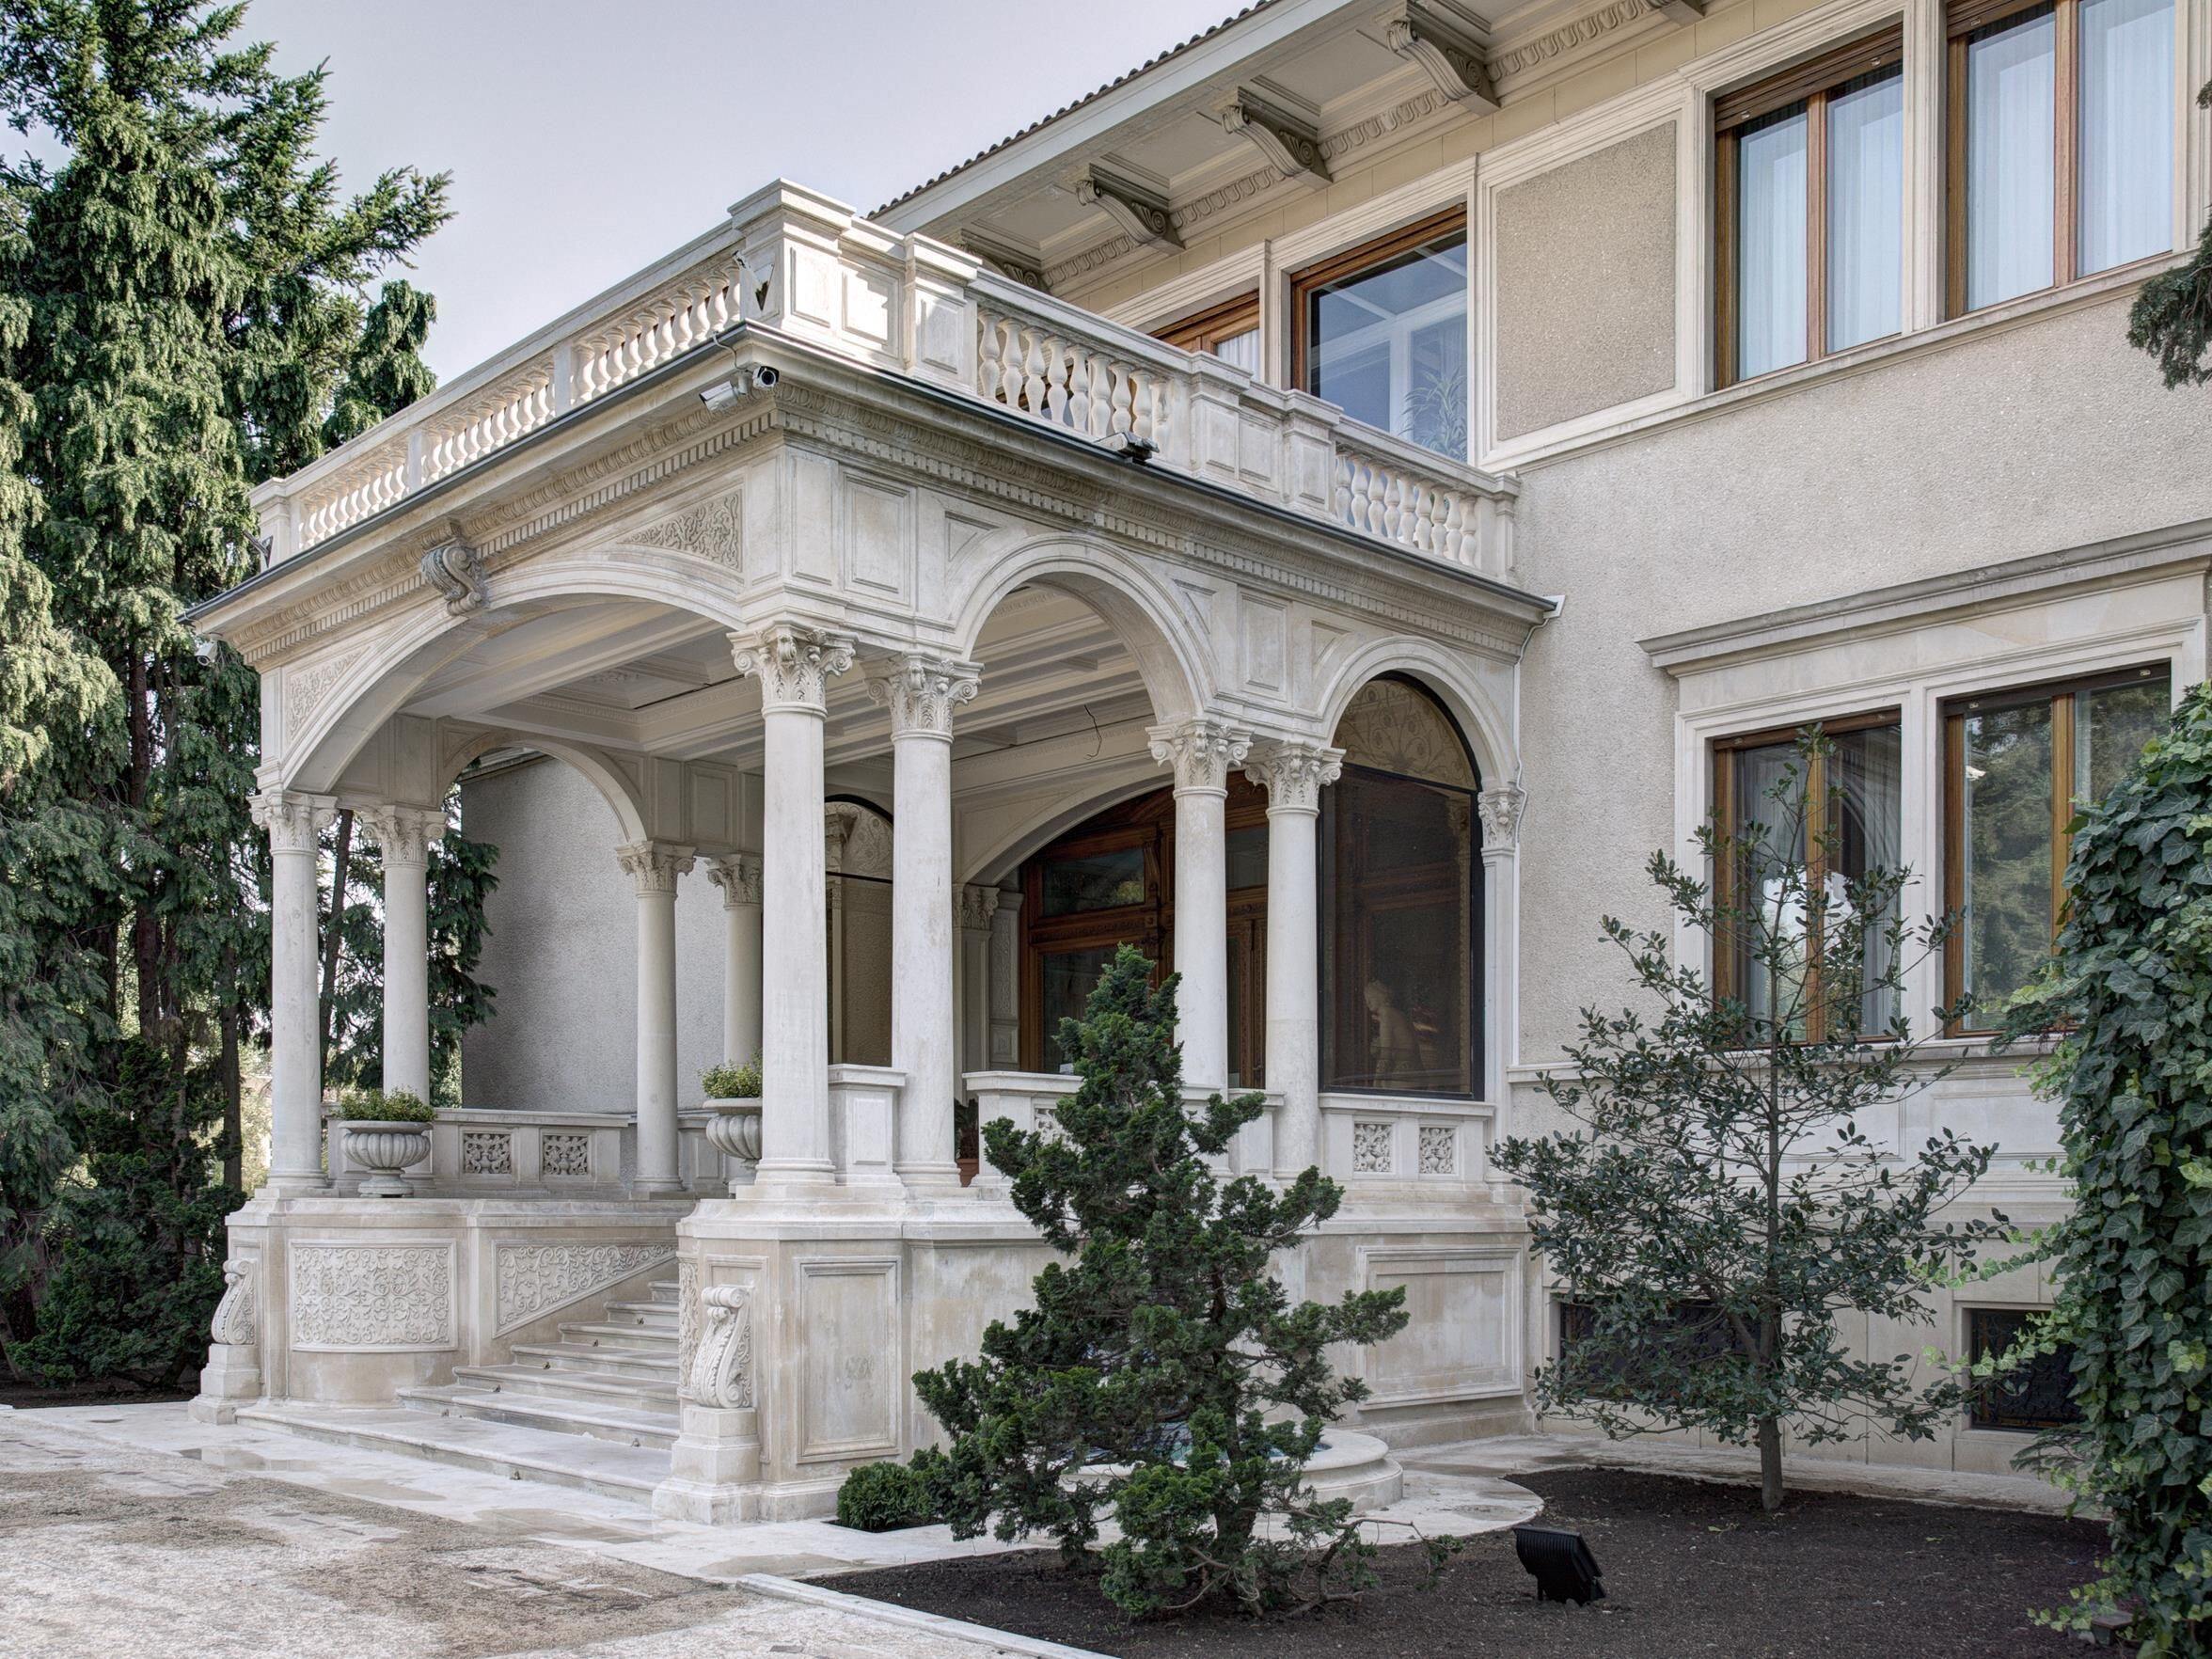 Primaverii Palace (House of Ceauşescu)